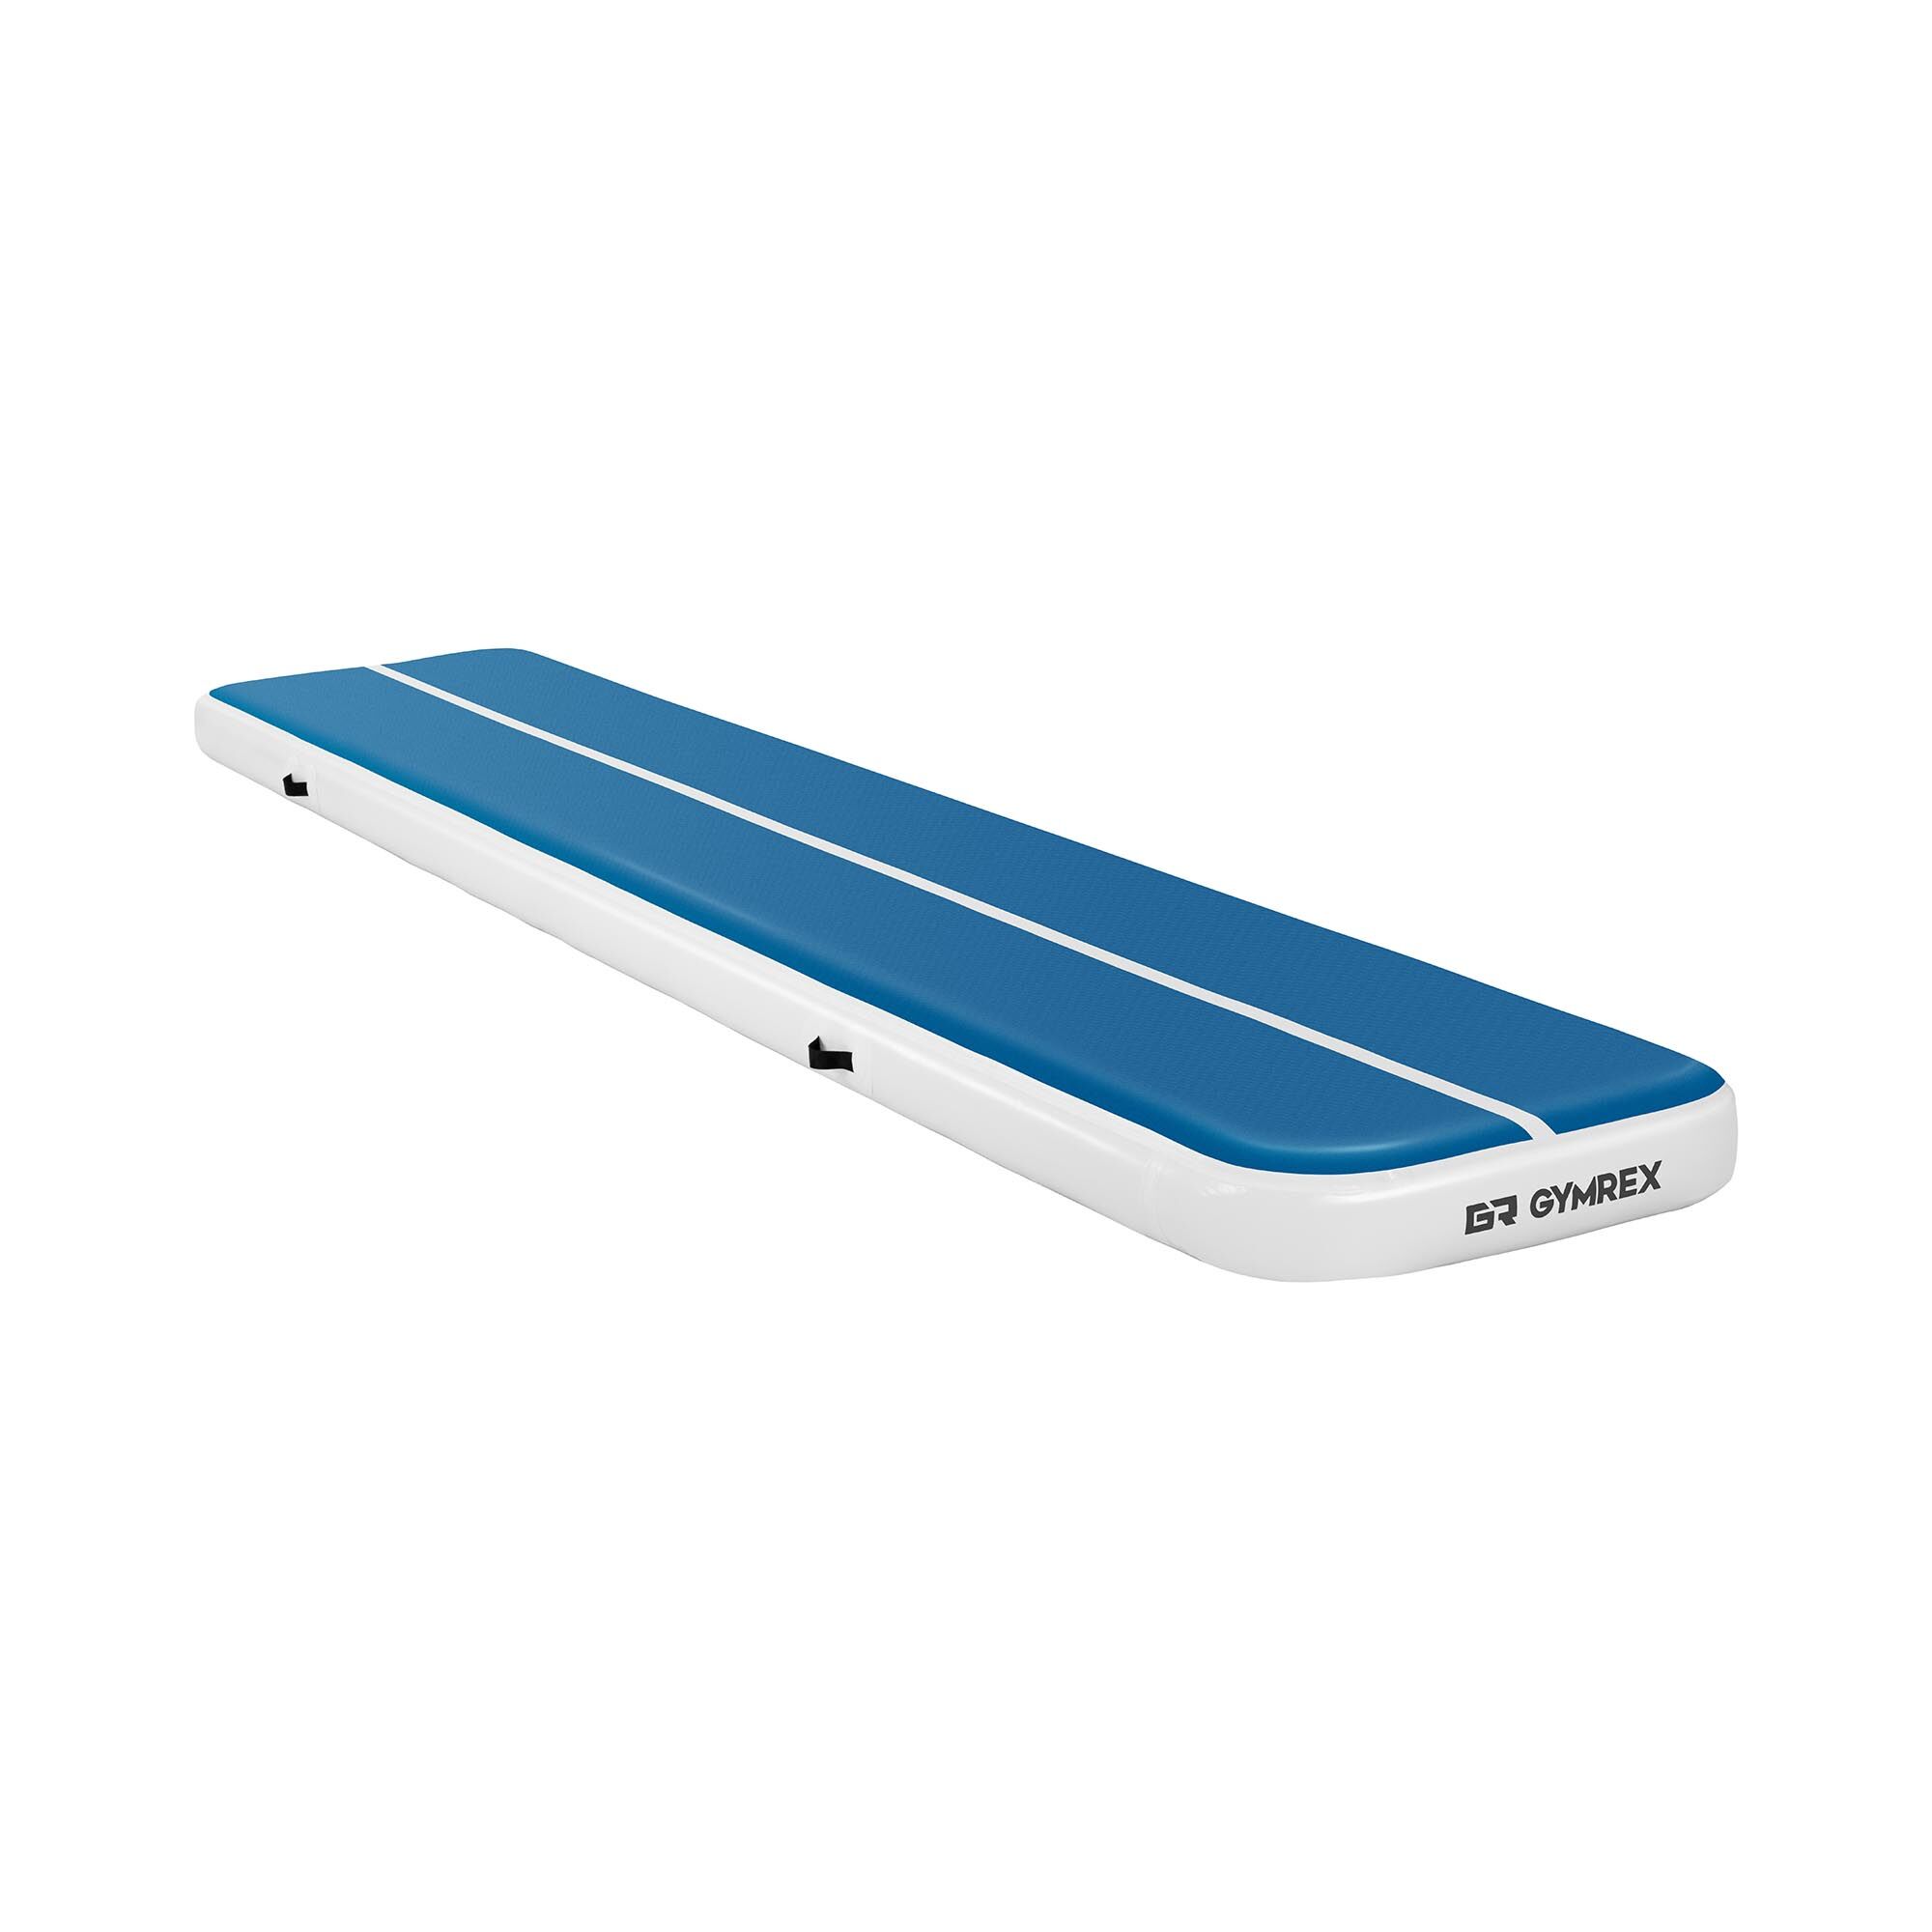 Gymrex Aufblasbare Turnmatte - Airtrack - 500 x 100 x 20 cm - 250 kg - blau/weiß 10230110